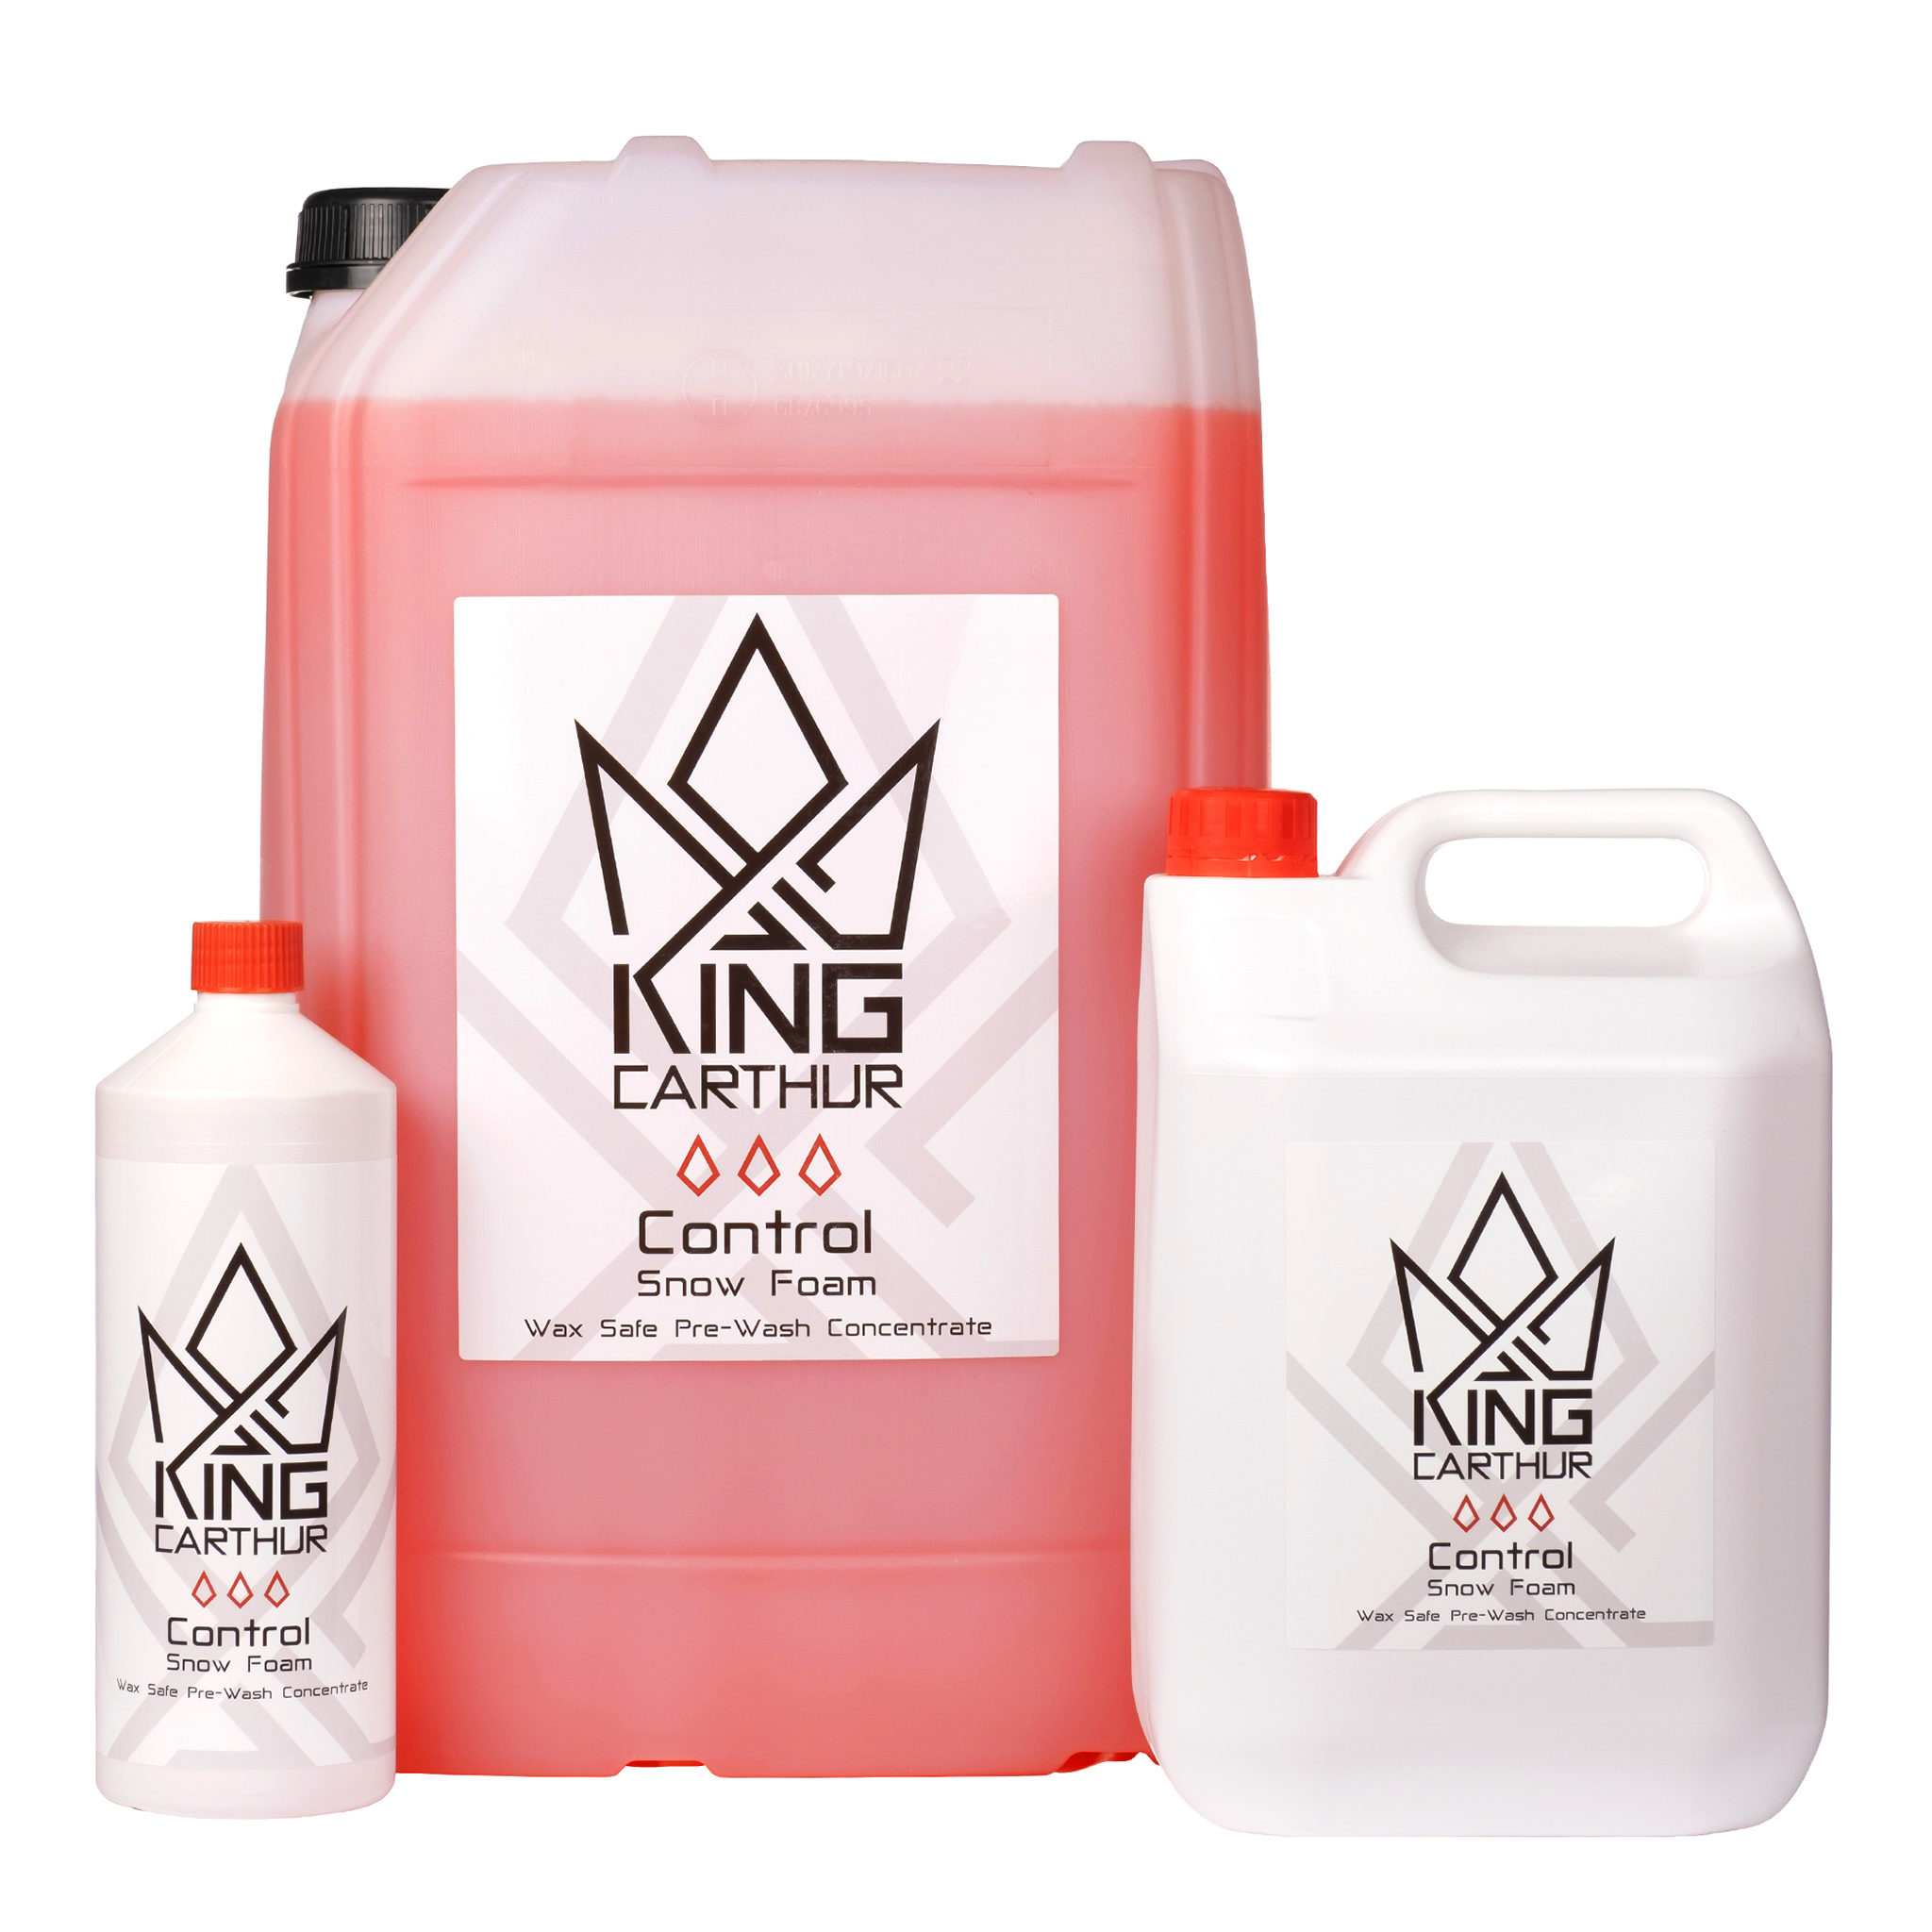 Förtvättsmedel King Carthur Control Snow Foam, 5000 ml